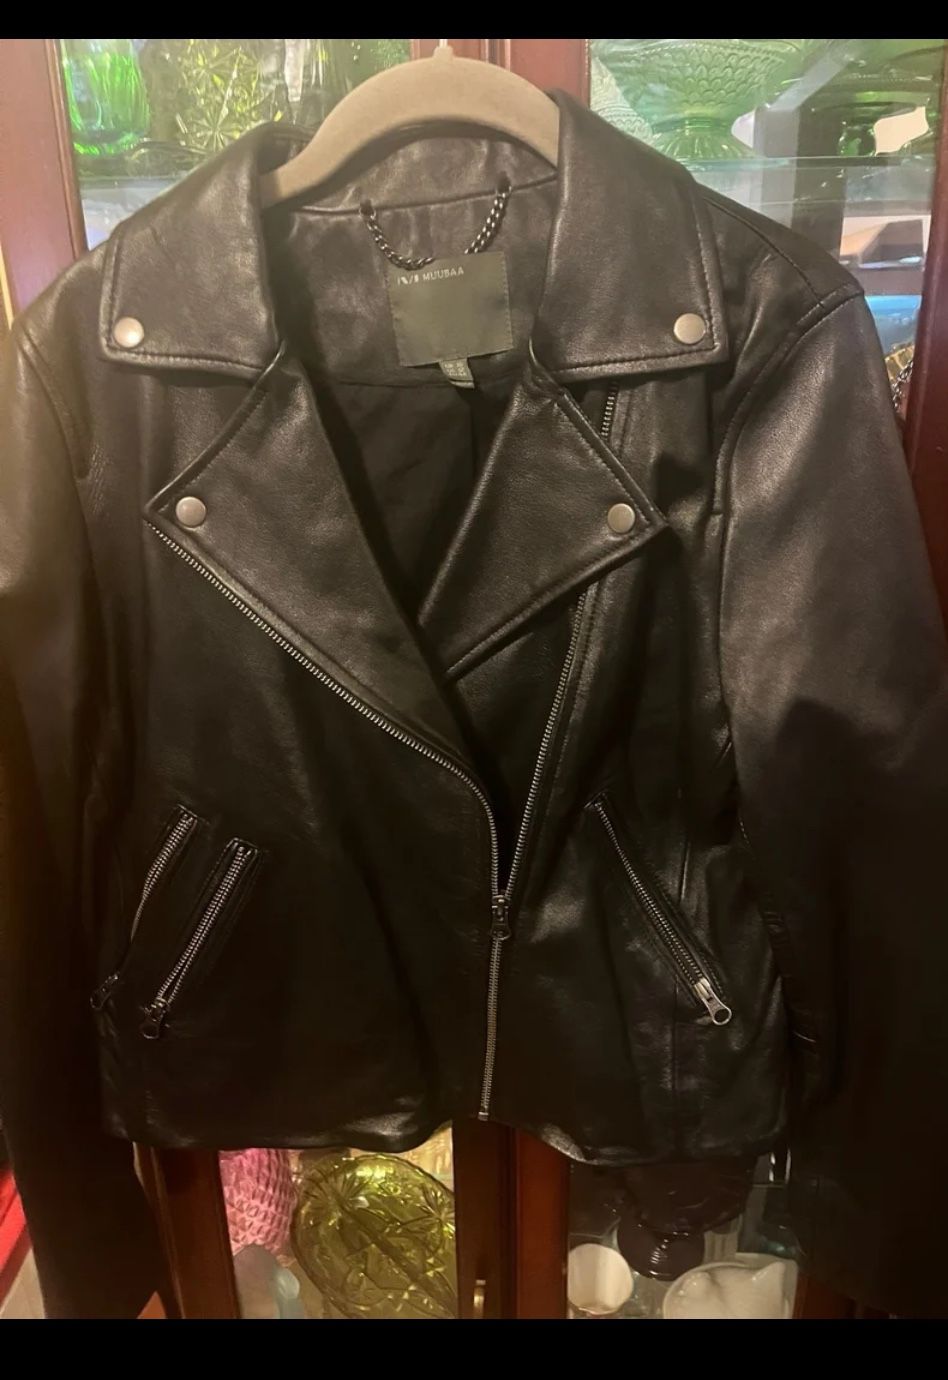 Women Leather Biker Jacket